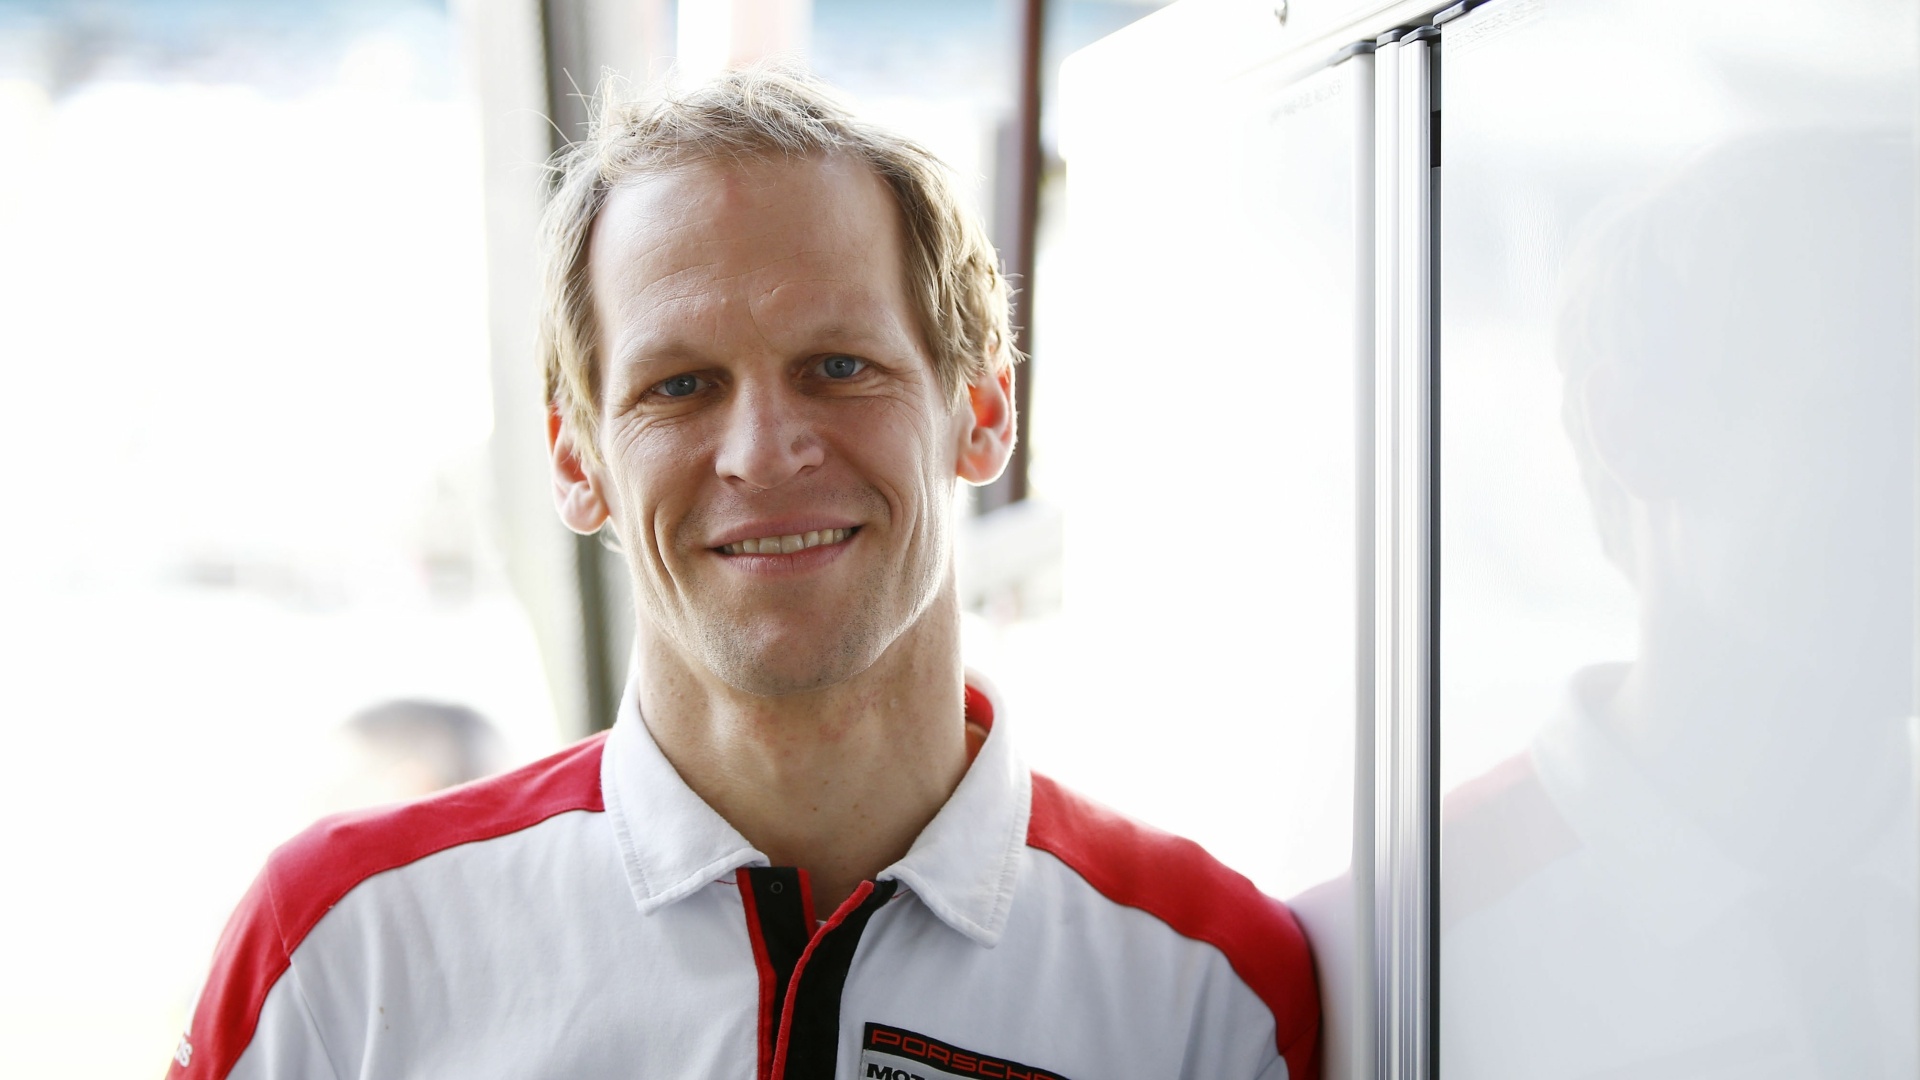 Former Racer And Porsche Brand Ambassador, Jörg Bergmeister